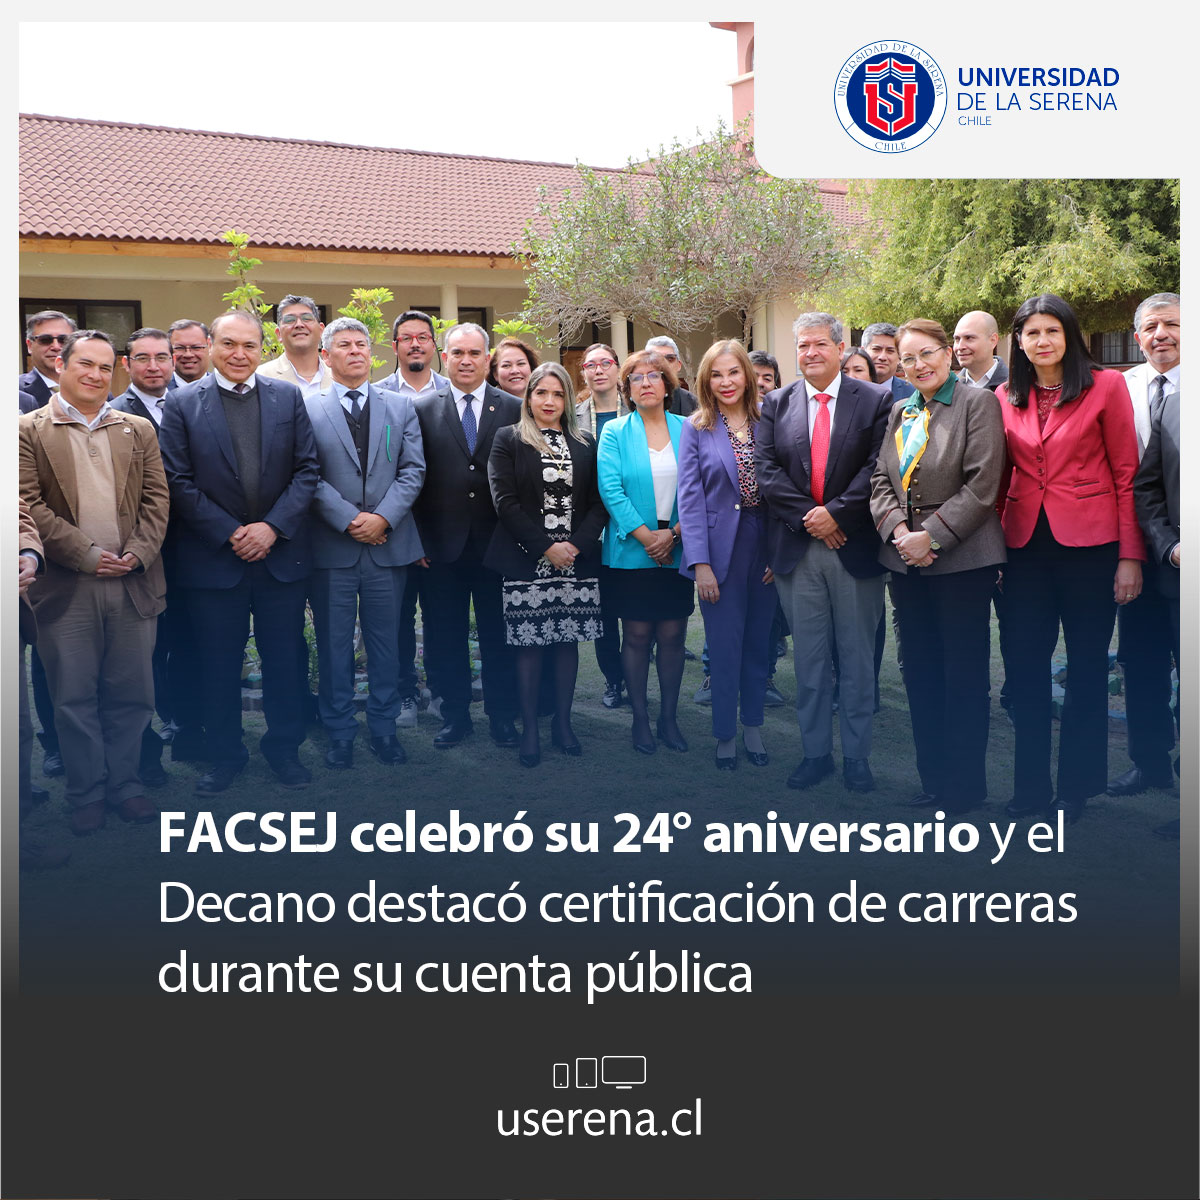 🔴La Facultad de Ciencias Sociales, Empresariales y Jurídicas #FACSEJ realizó la ceremonia de celebración de su 24° aniversario. 📱Ver nota👉userena.cl/actualidad/7010